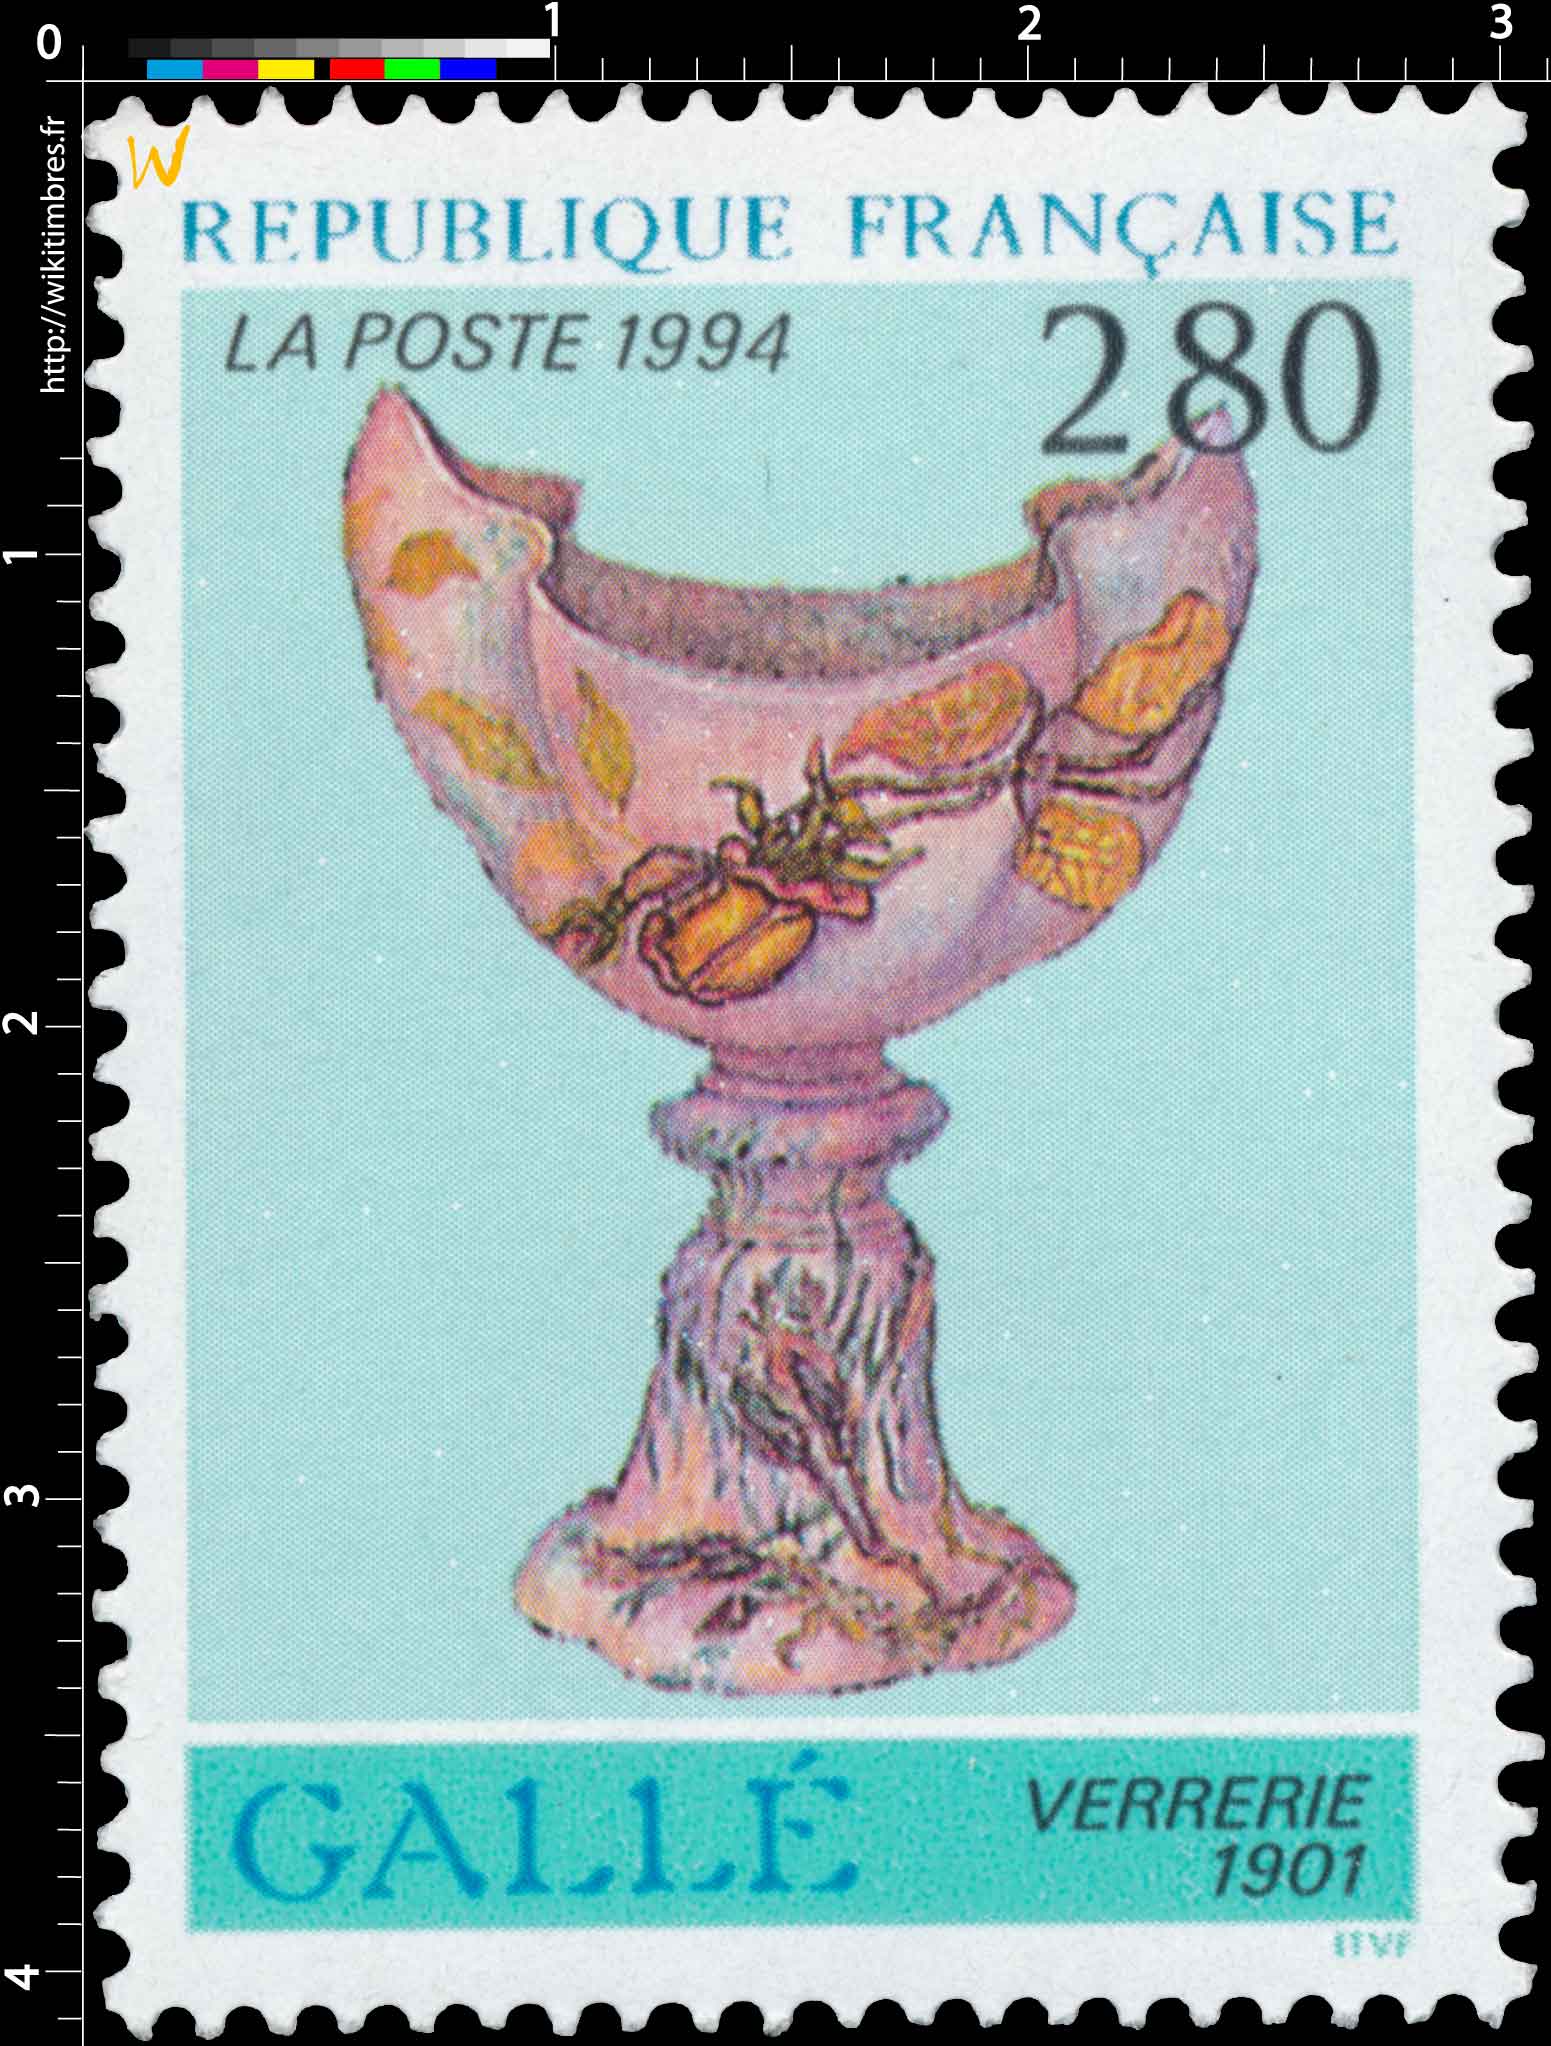 1994 GALLÉ VERRERIE 1901